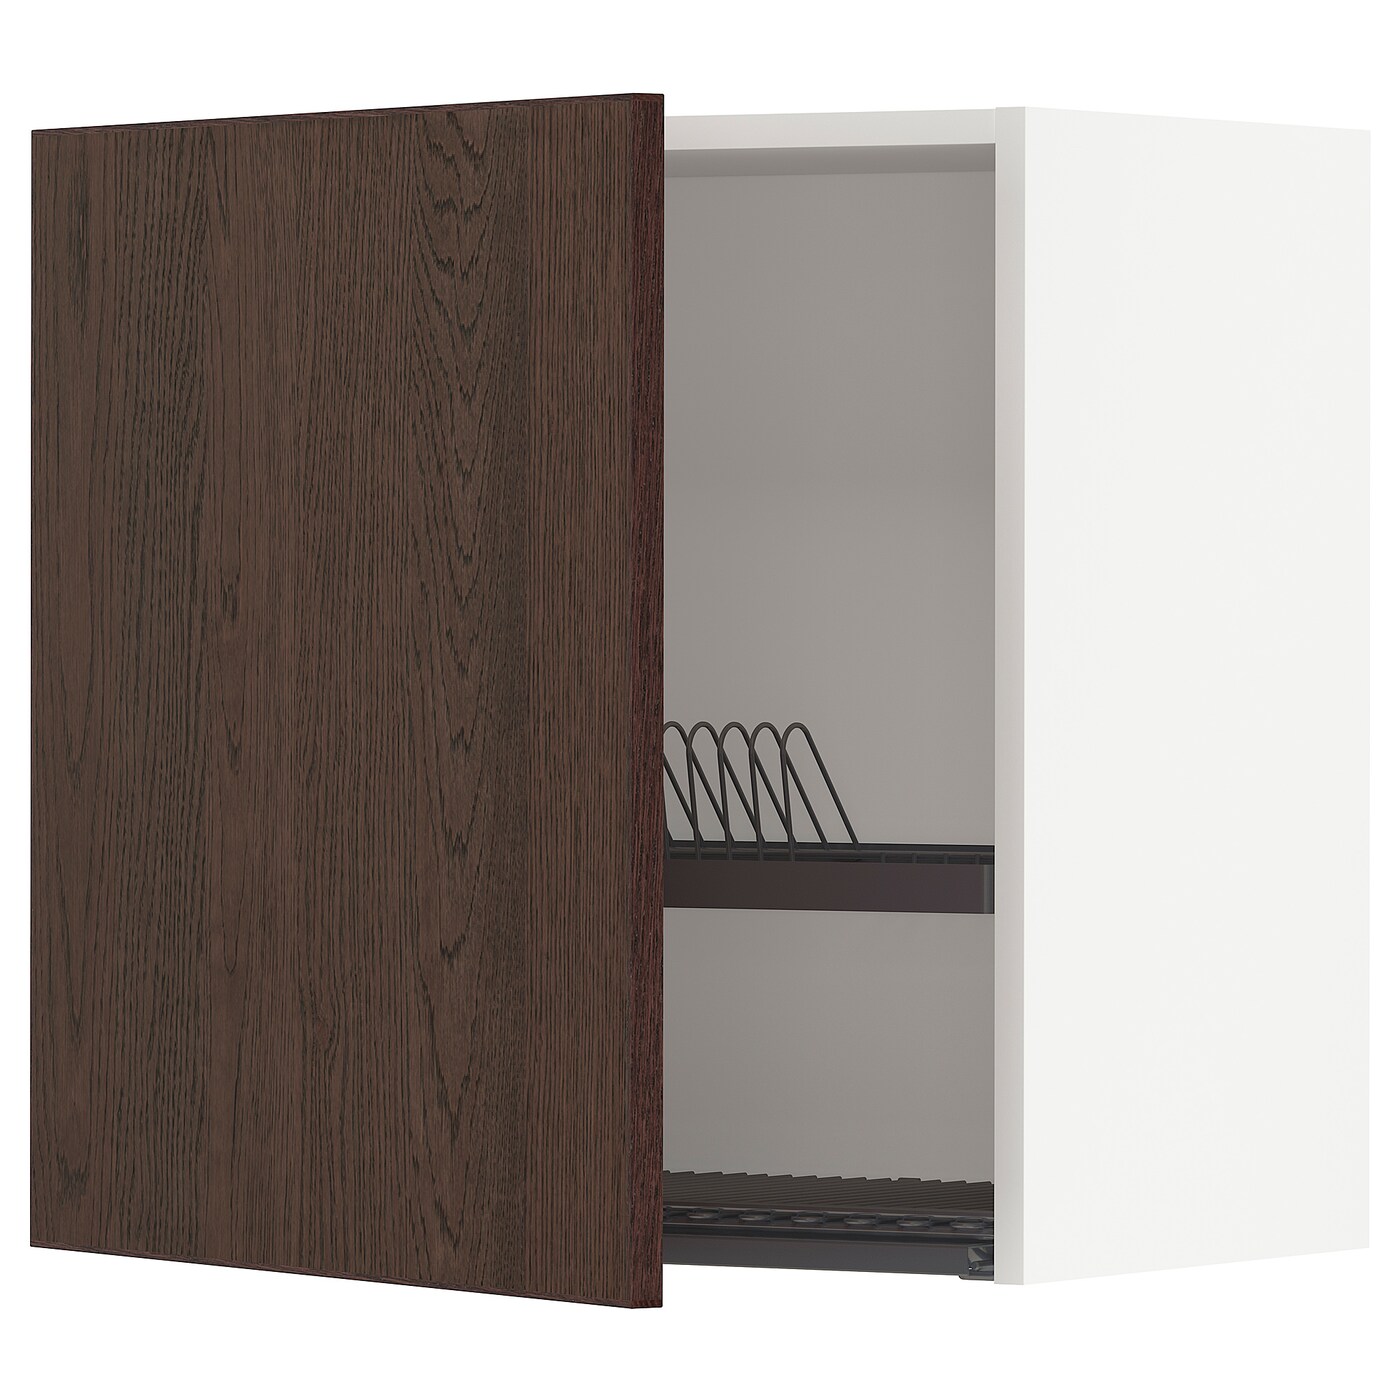 Навесной шкаф с сушилкой - METOD IKEA/ МЕТОД ИКЕА, 60х60 см, белый/коричневый